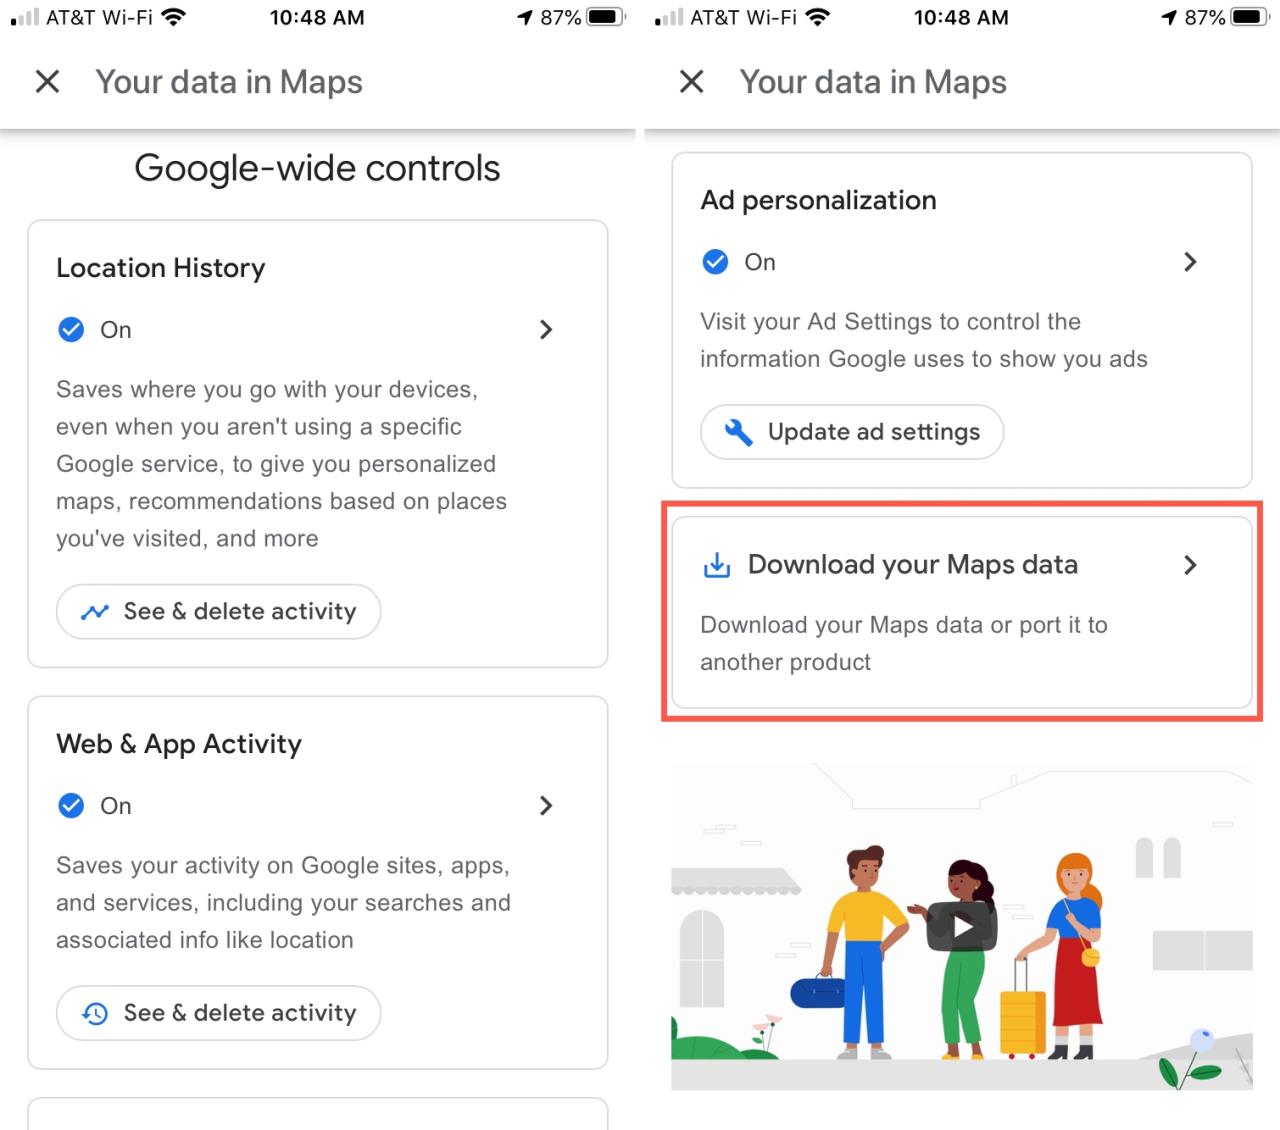 Descarga tus datos de Maps iPhone